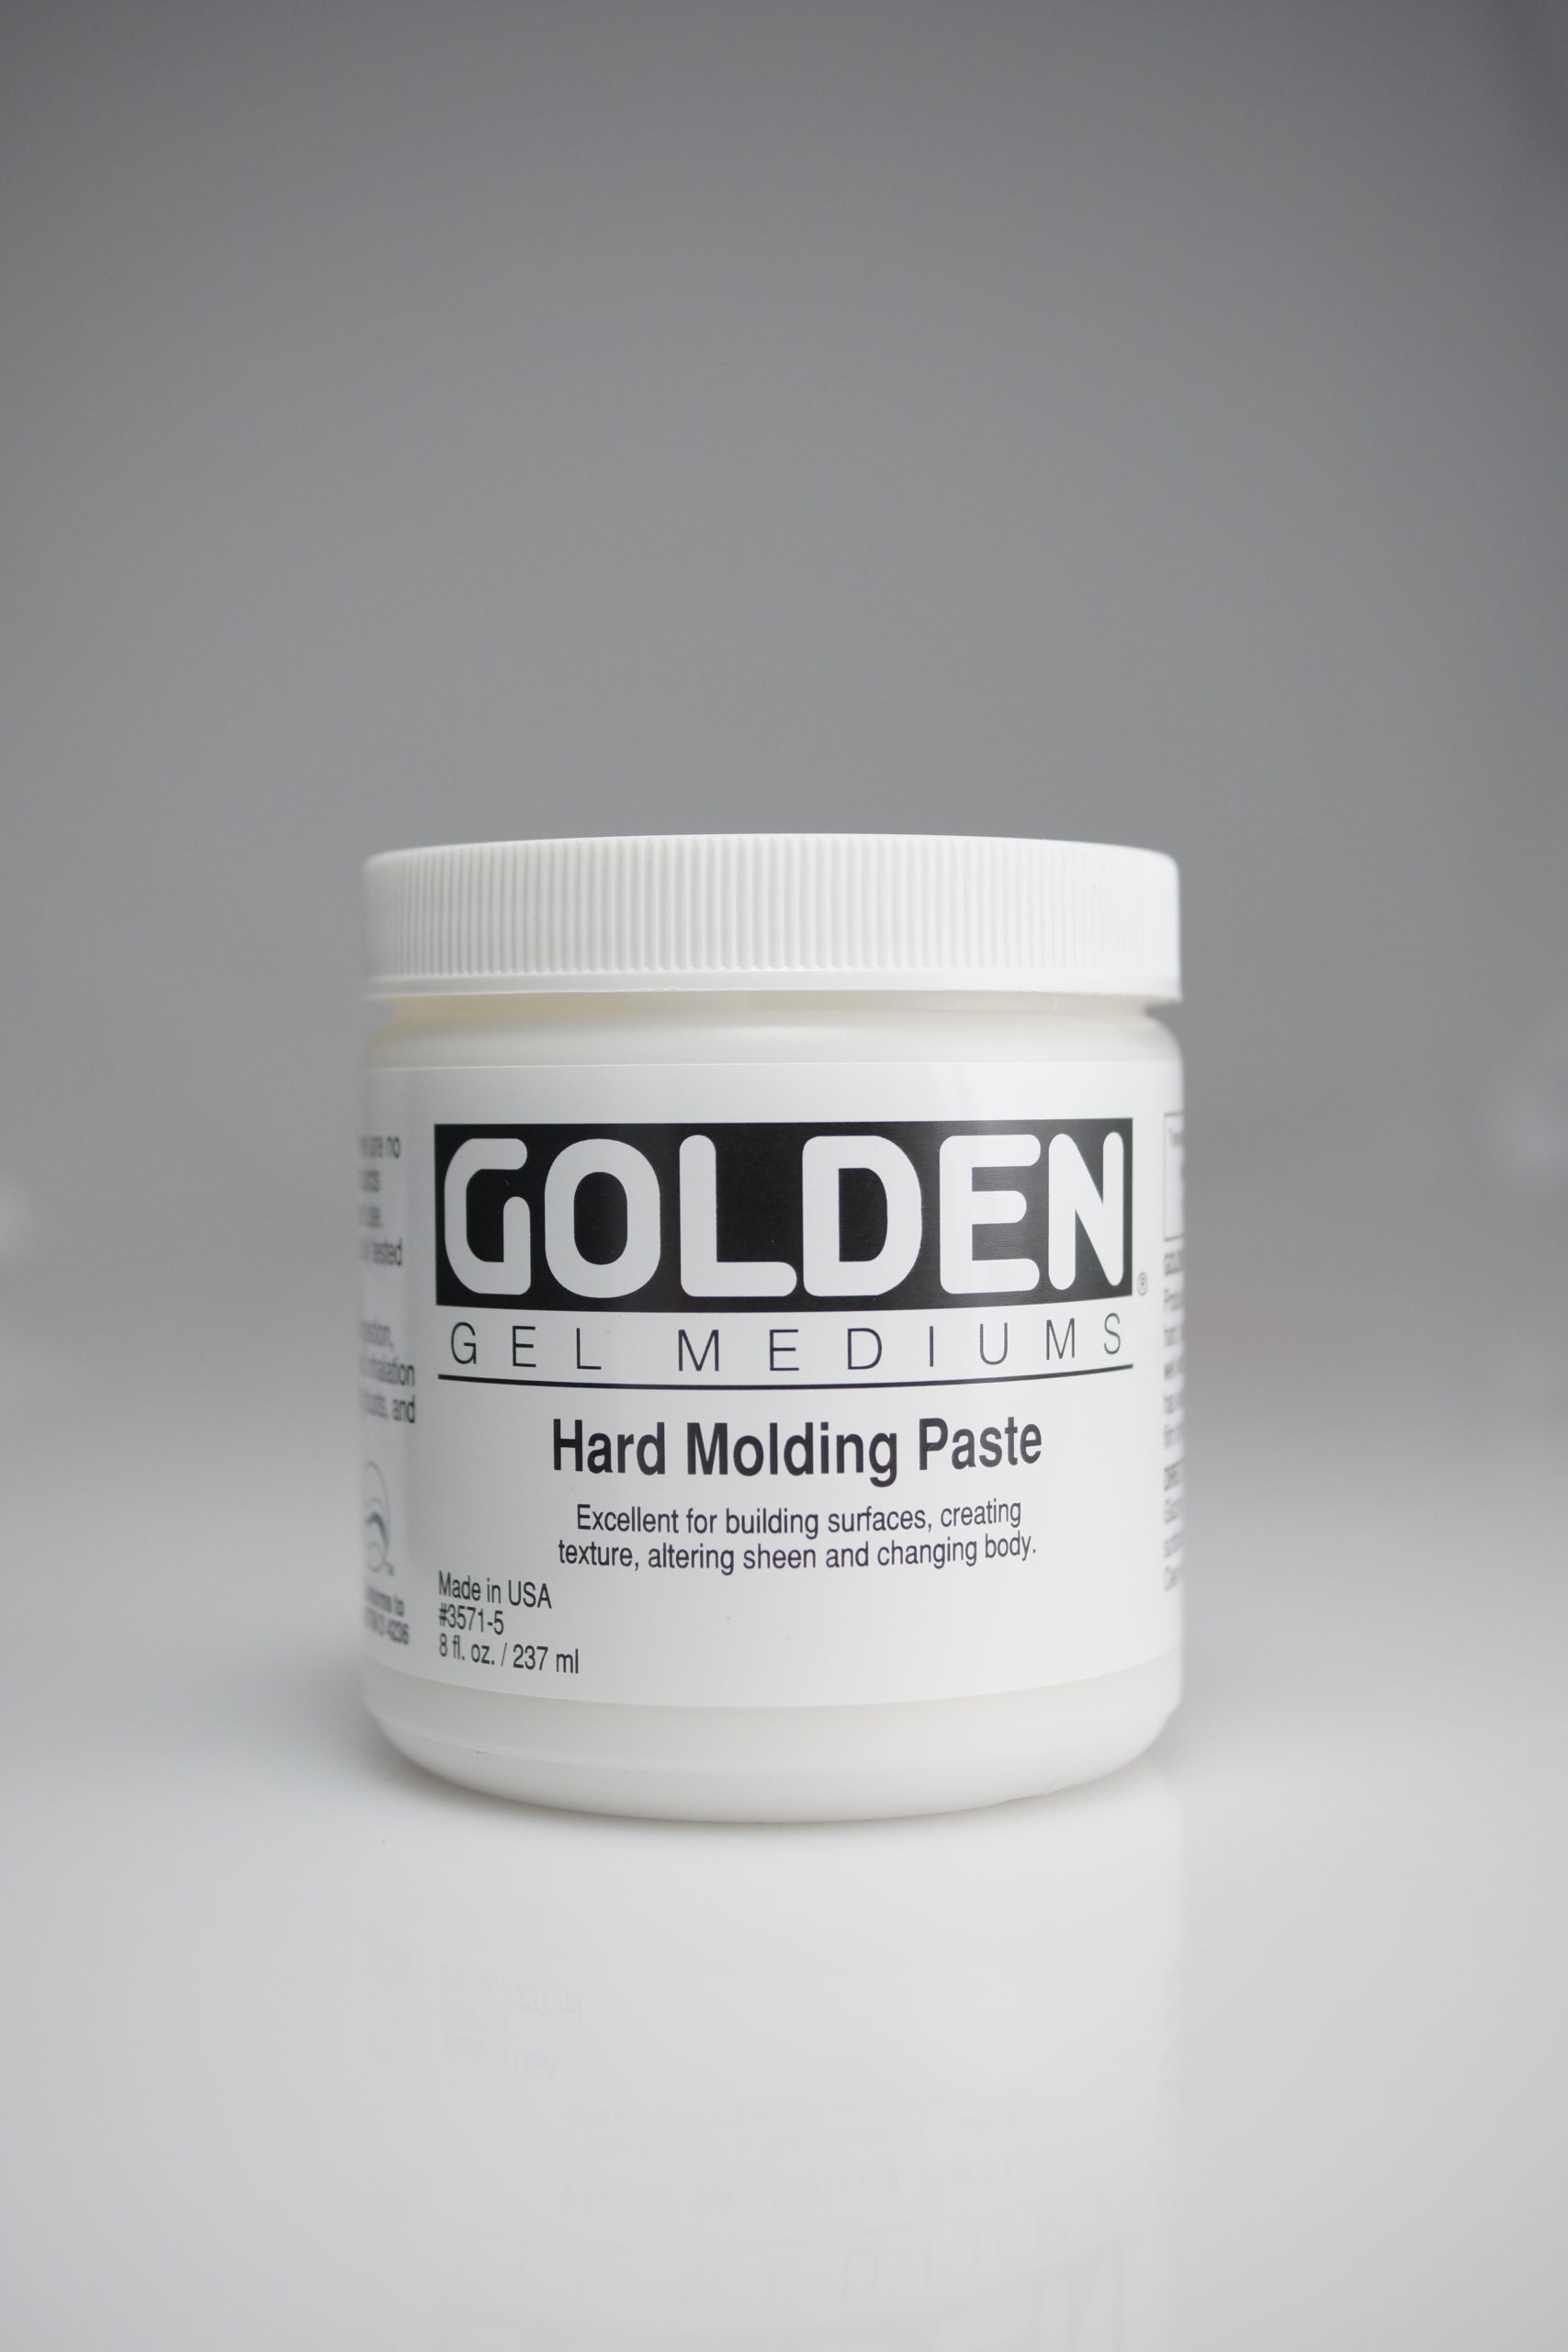 Golden Hard Molding Paste